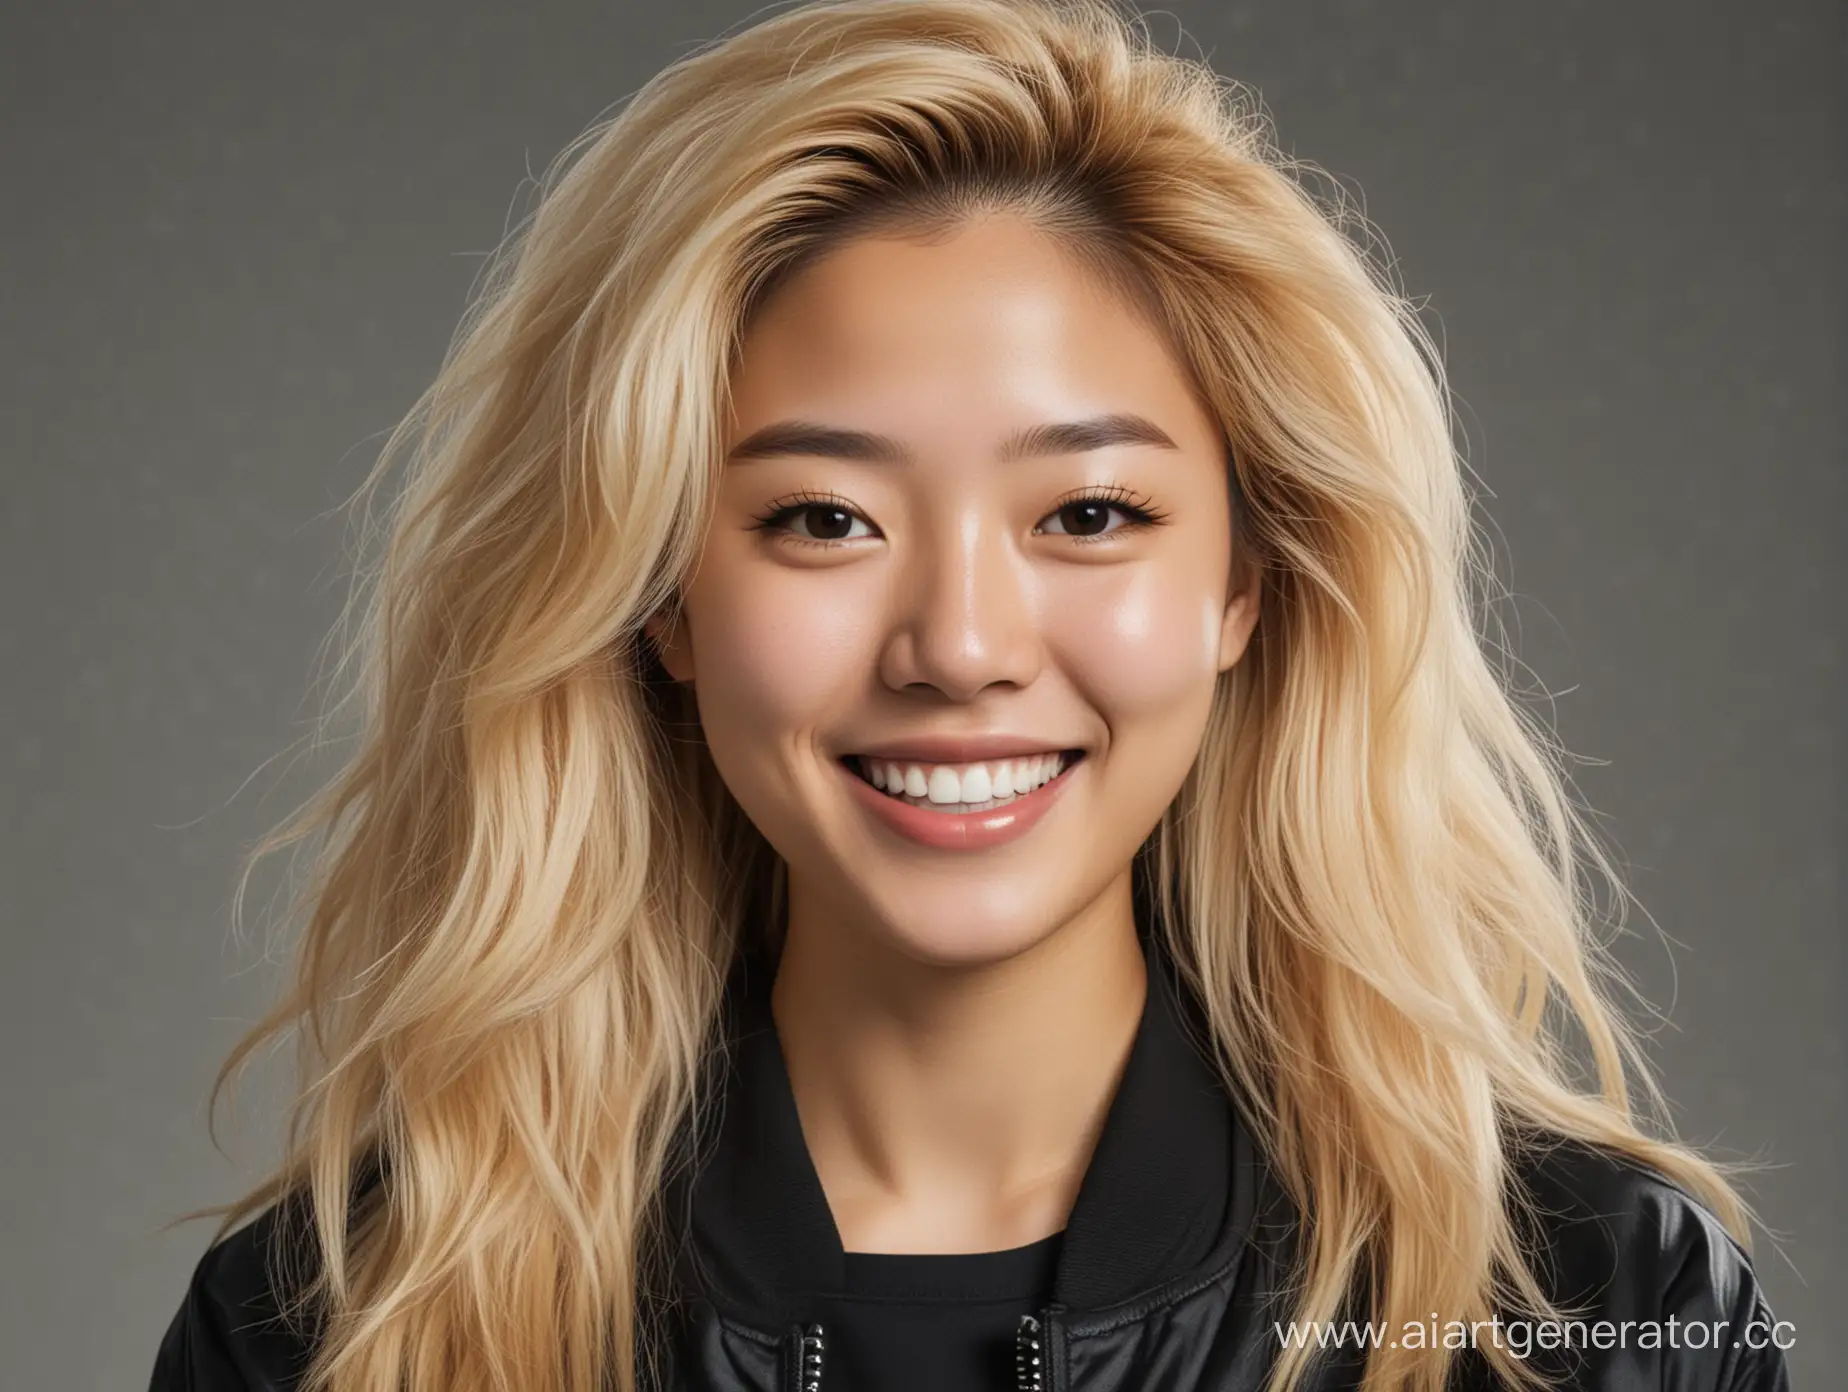 Сгенерируйте mugshot молодой американизированной кореянки 20-23 лет с объемным блонд карэ. Одета в черный бомбер. Важно, чтобы ее искренняя улыбка выражала оптимизм, несмотря на обстановку